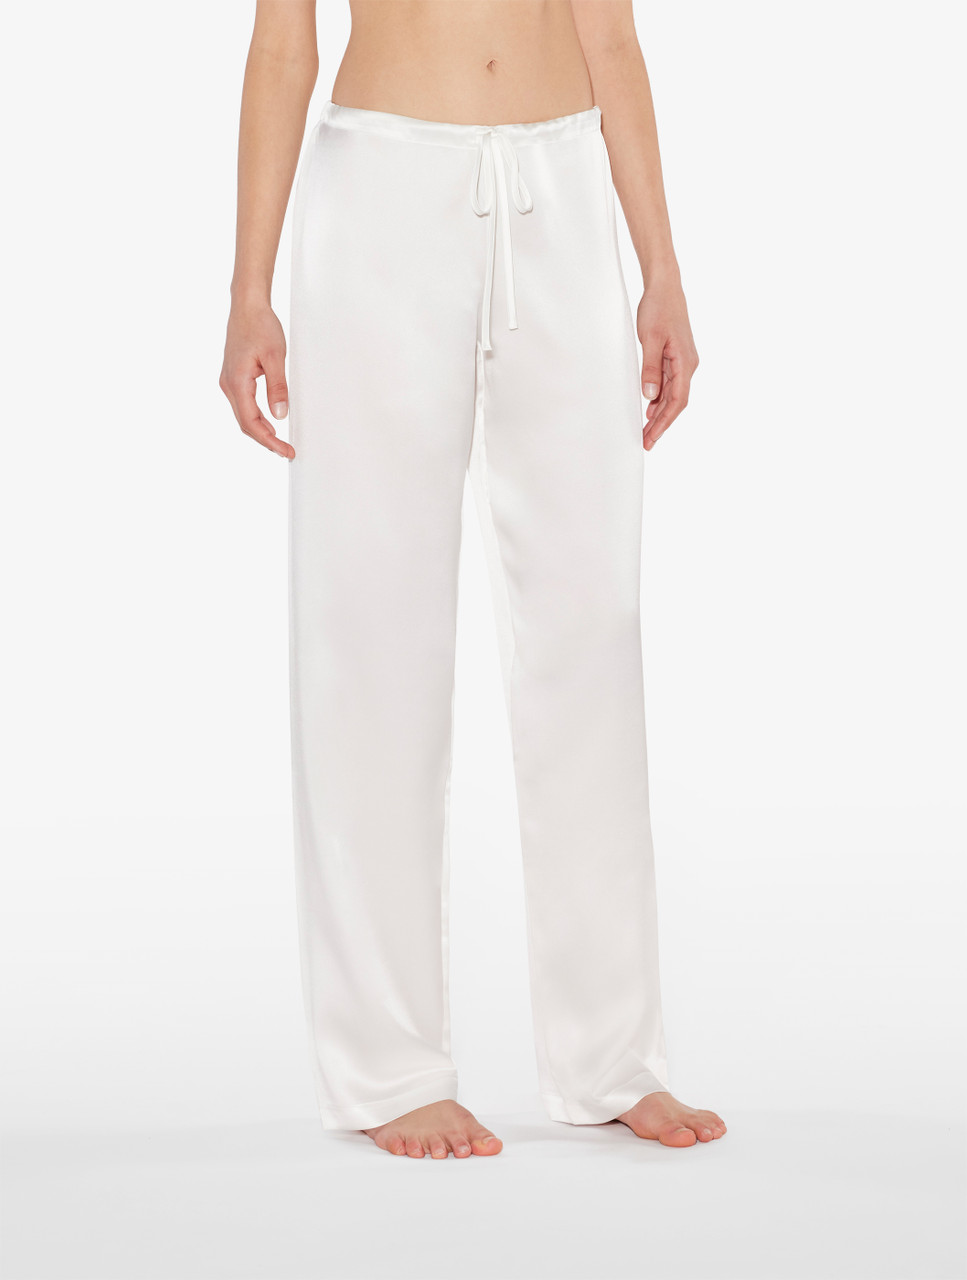 White silk pyjama set